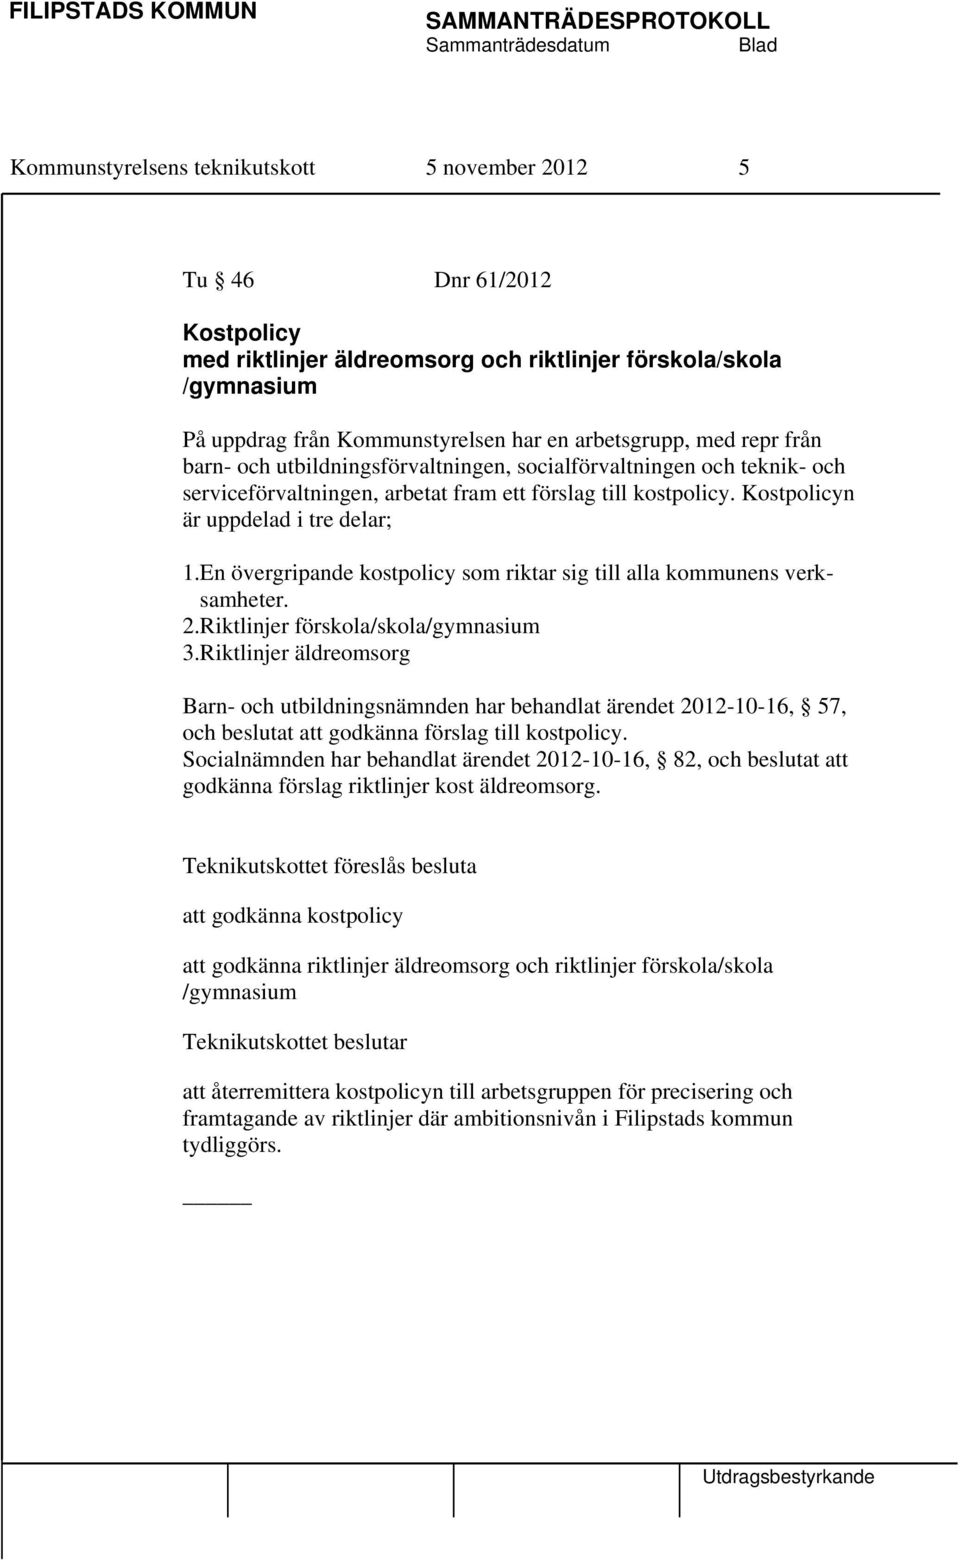 En övergripande kostpolicy som riktar sig till alla kommunens verksamheter. 2.Riktlinjer förskola/skola/gymnasium 3.